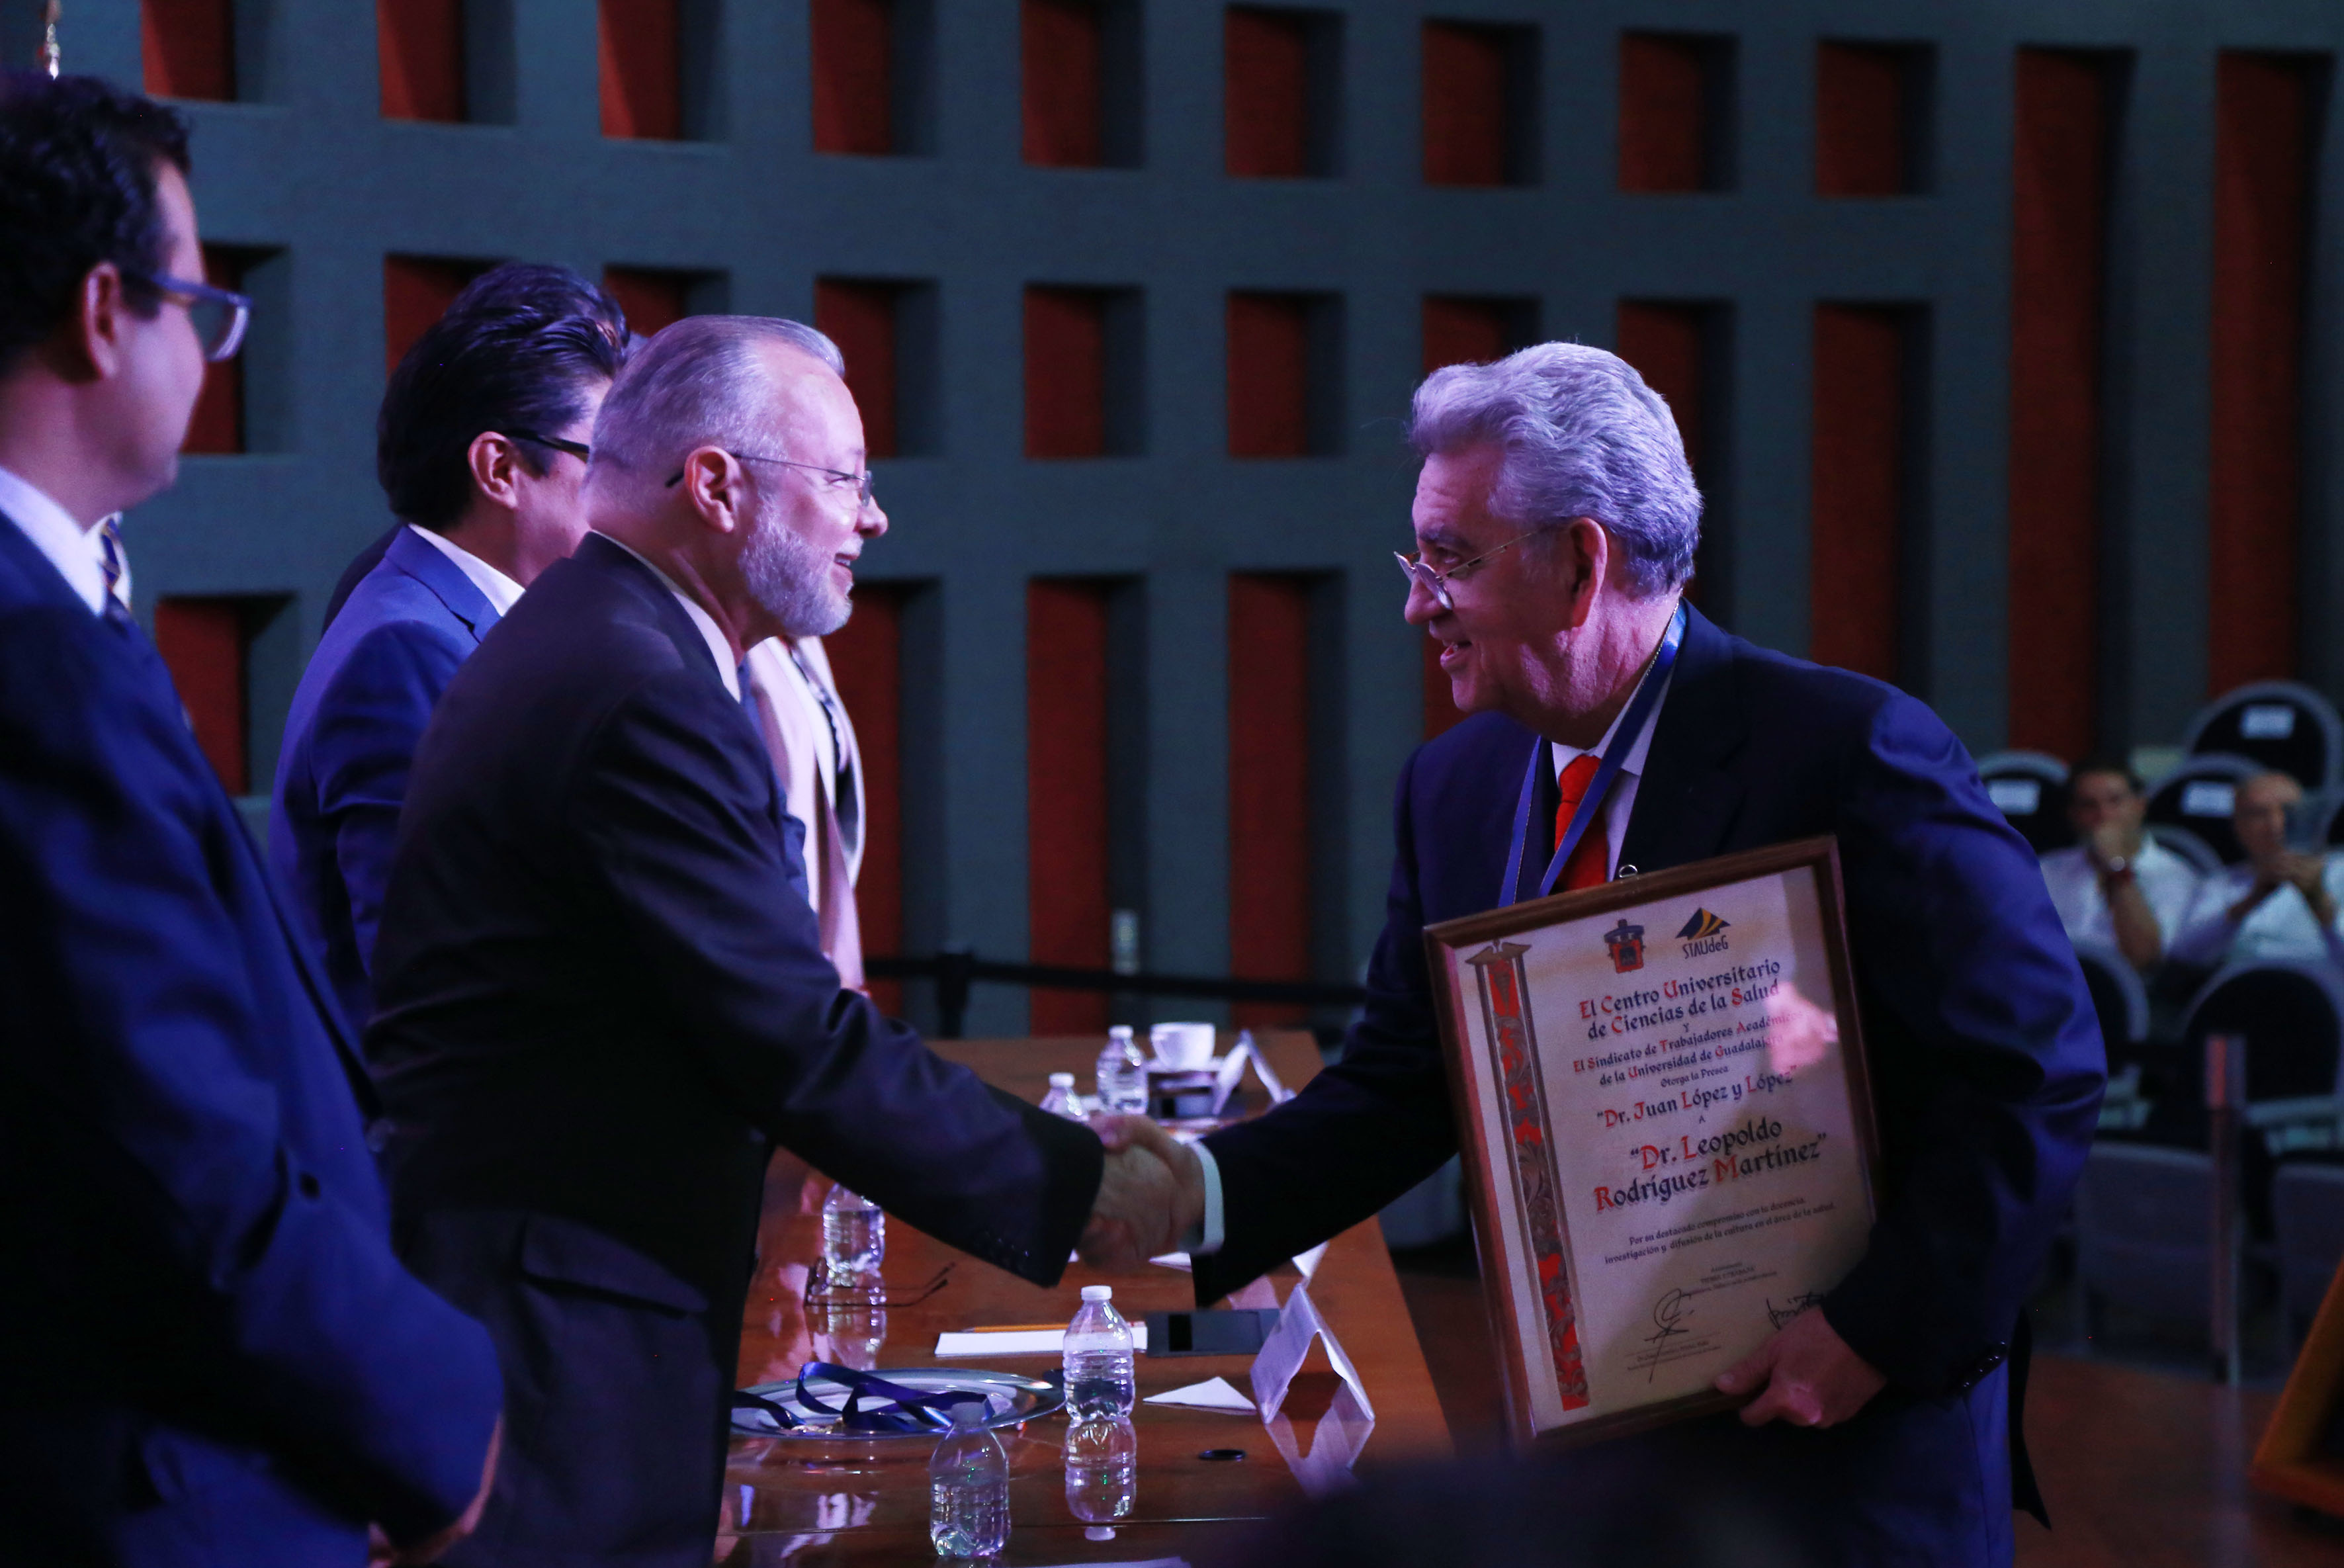 Galardonado recibiendo reconocimiento y medalla de manos del Mtro. Trinidad Padilla López